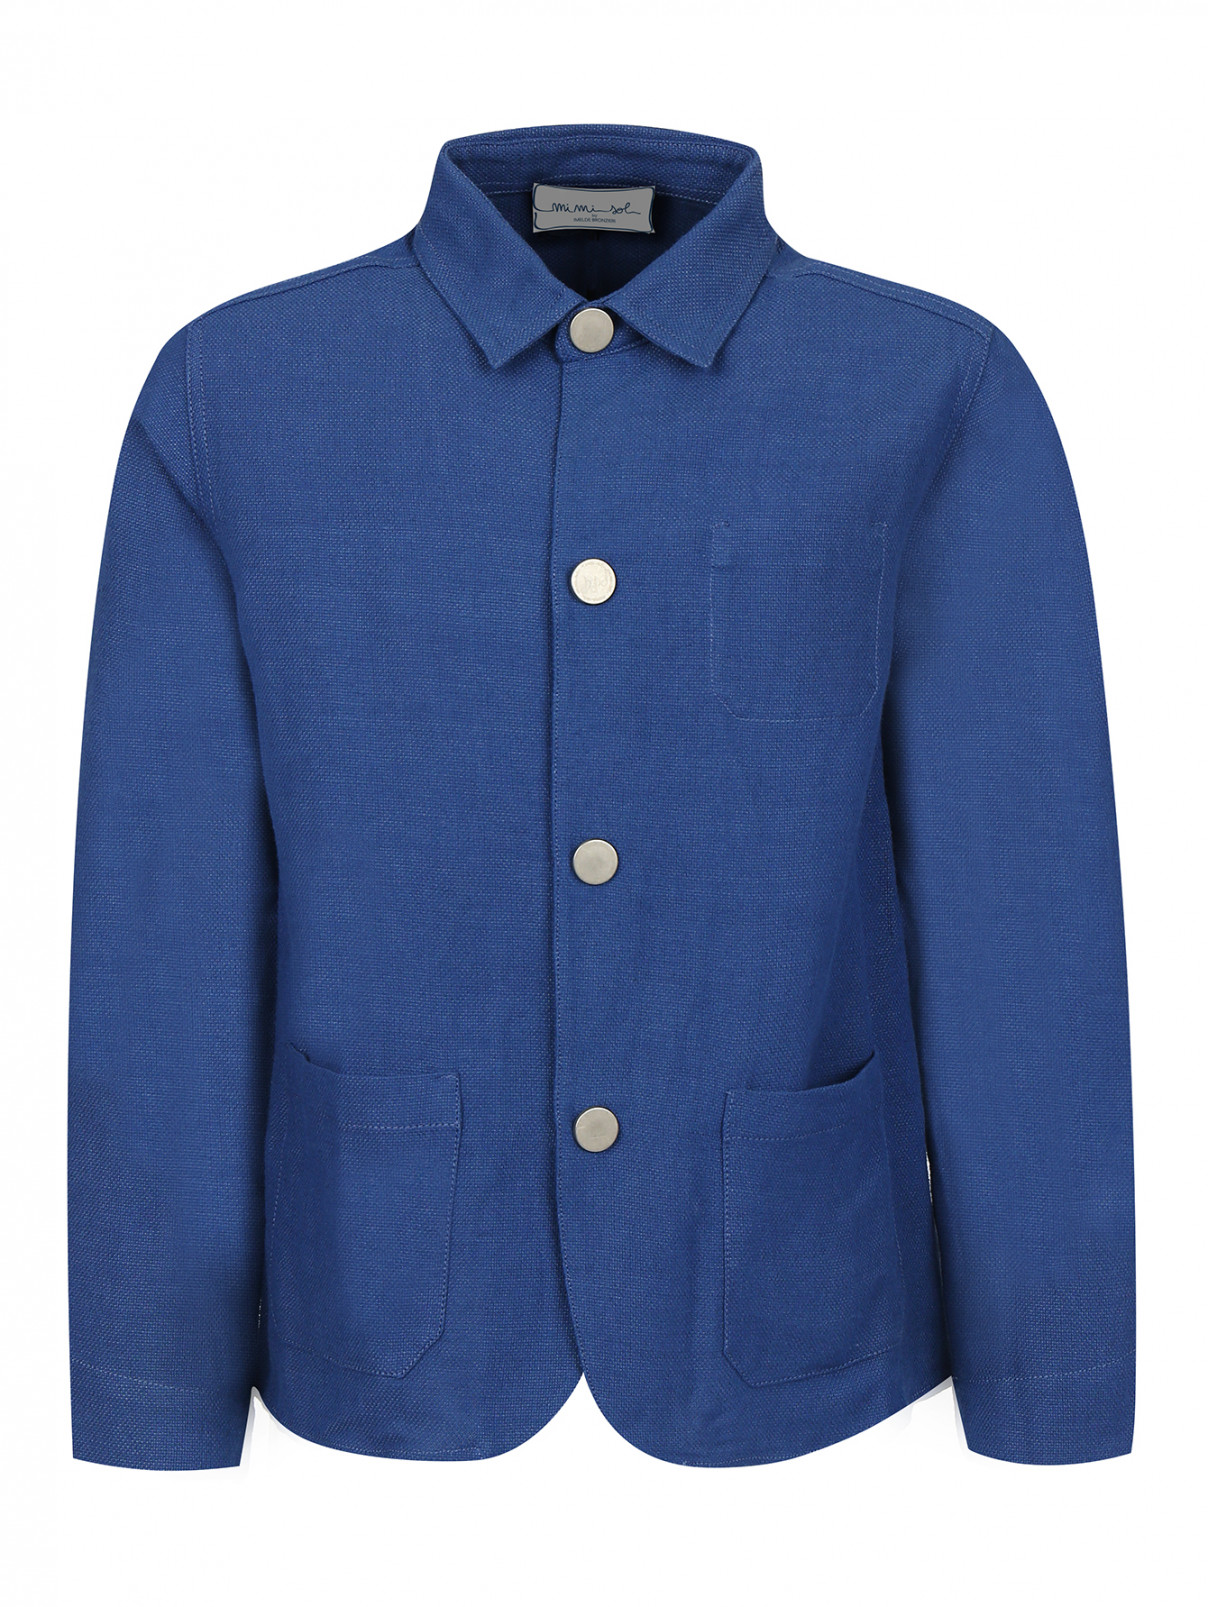 Пиджак из хлопка и льна с накладными карманами MiMiSol  –  Общий вид  – Цвет:  Синий